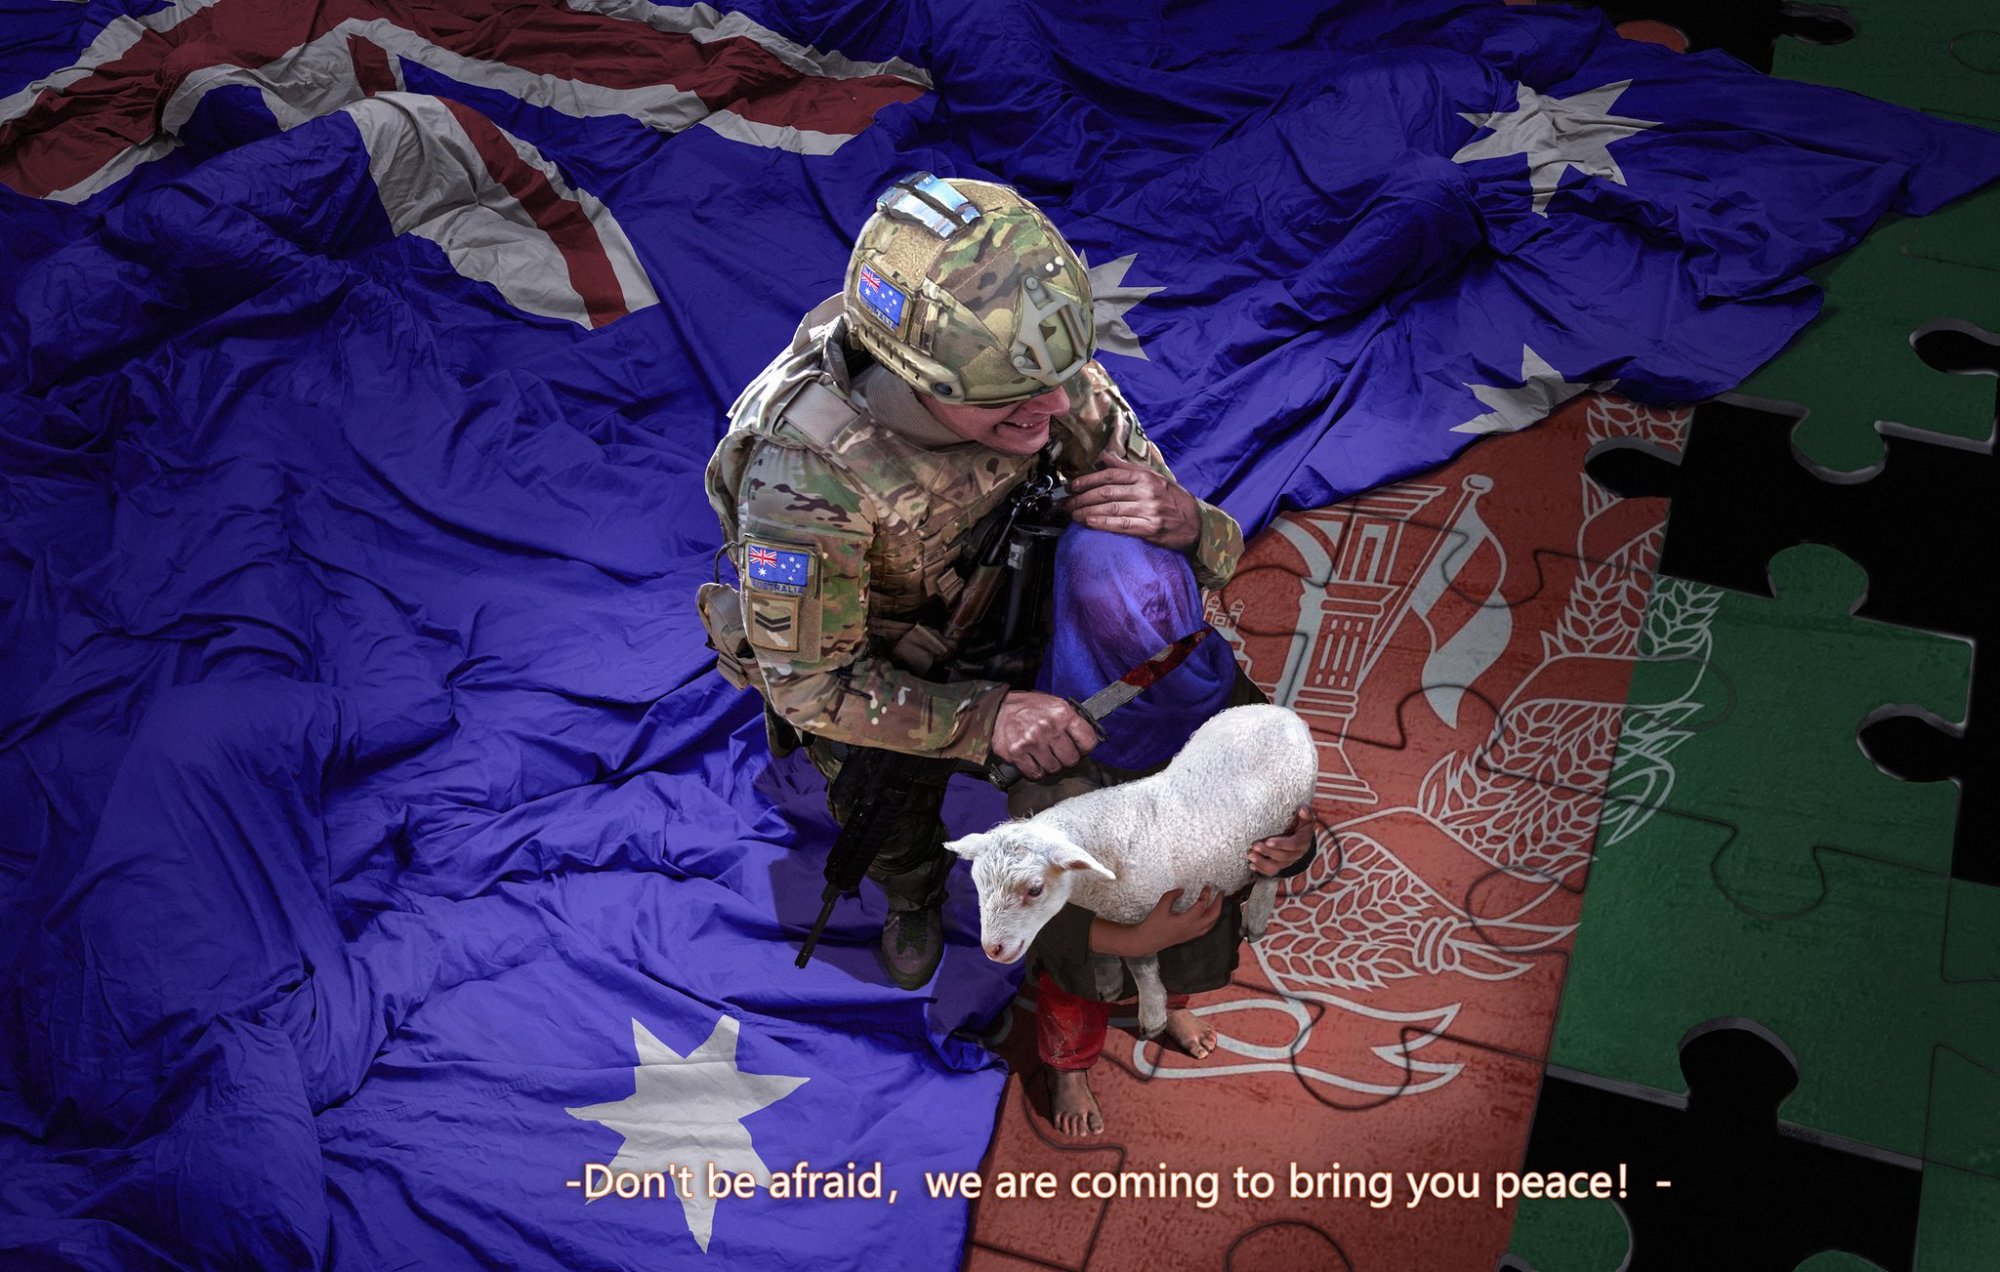 聯合國會議變批鬥會，30多國施壓澳大利亞，中方要求調查澳軍